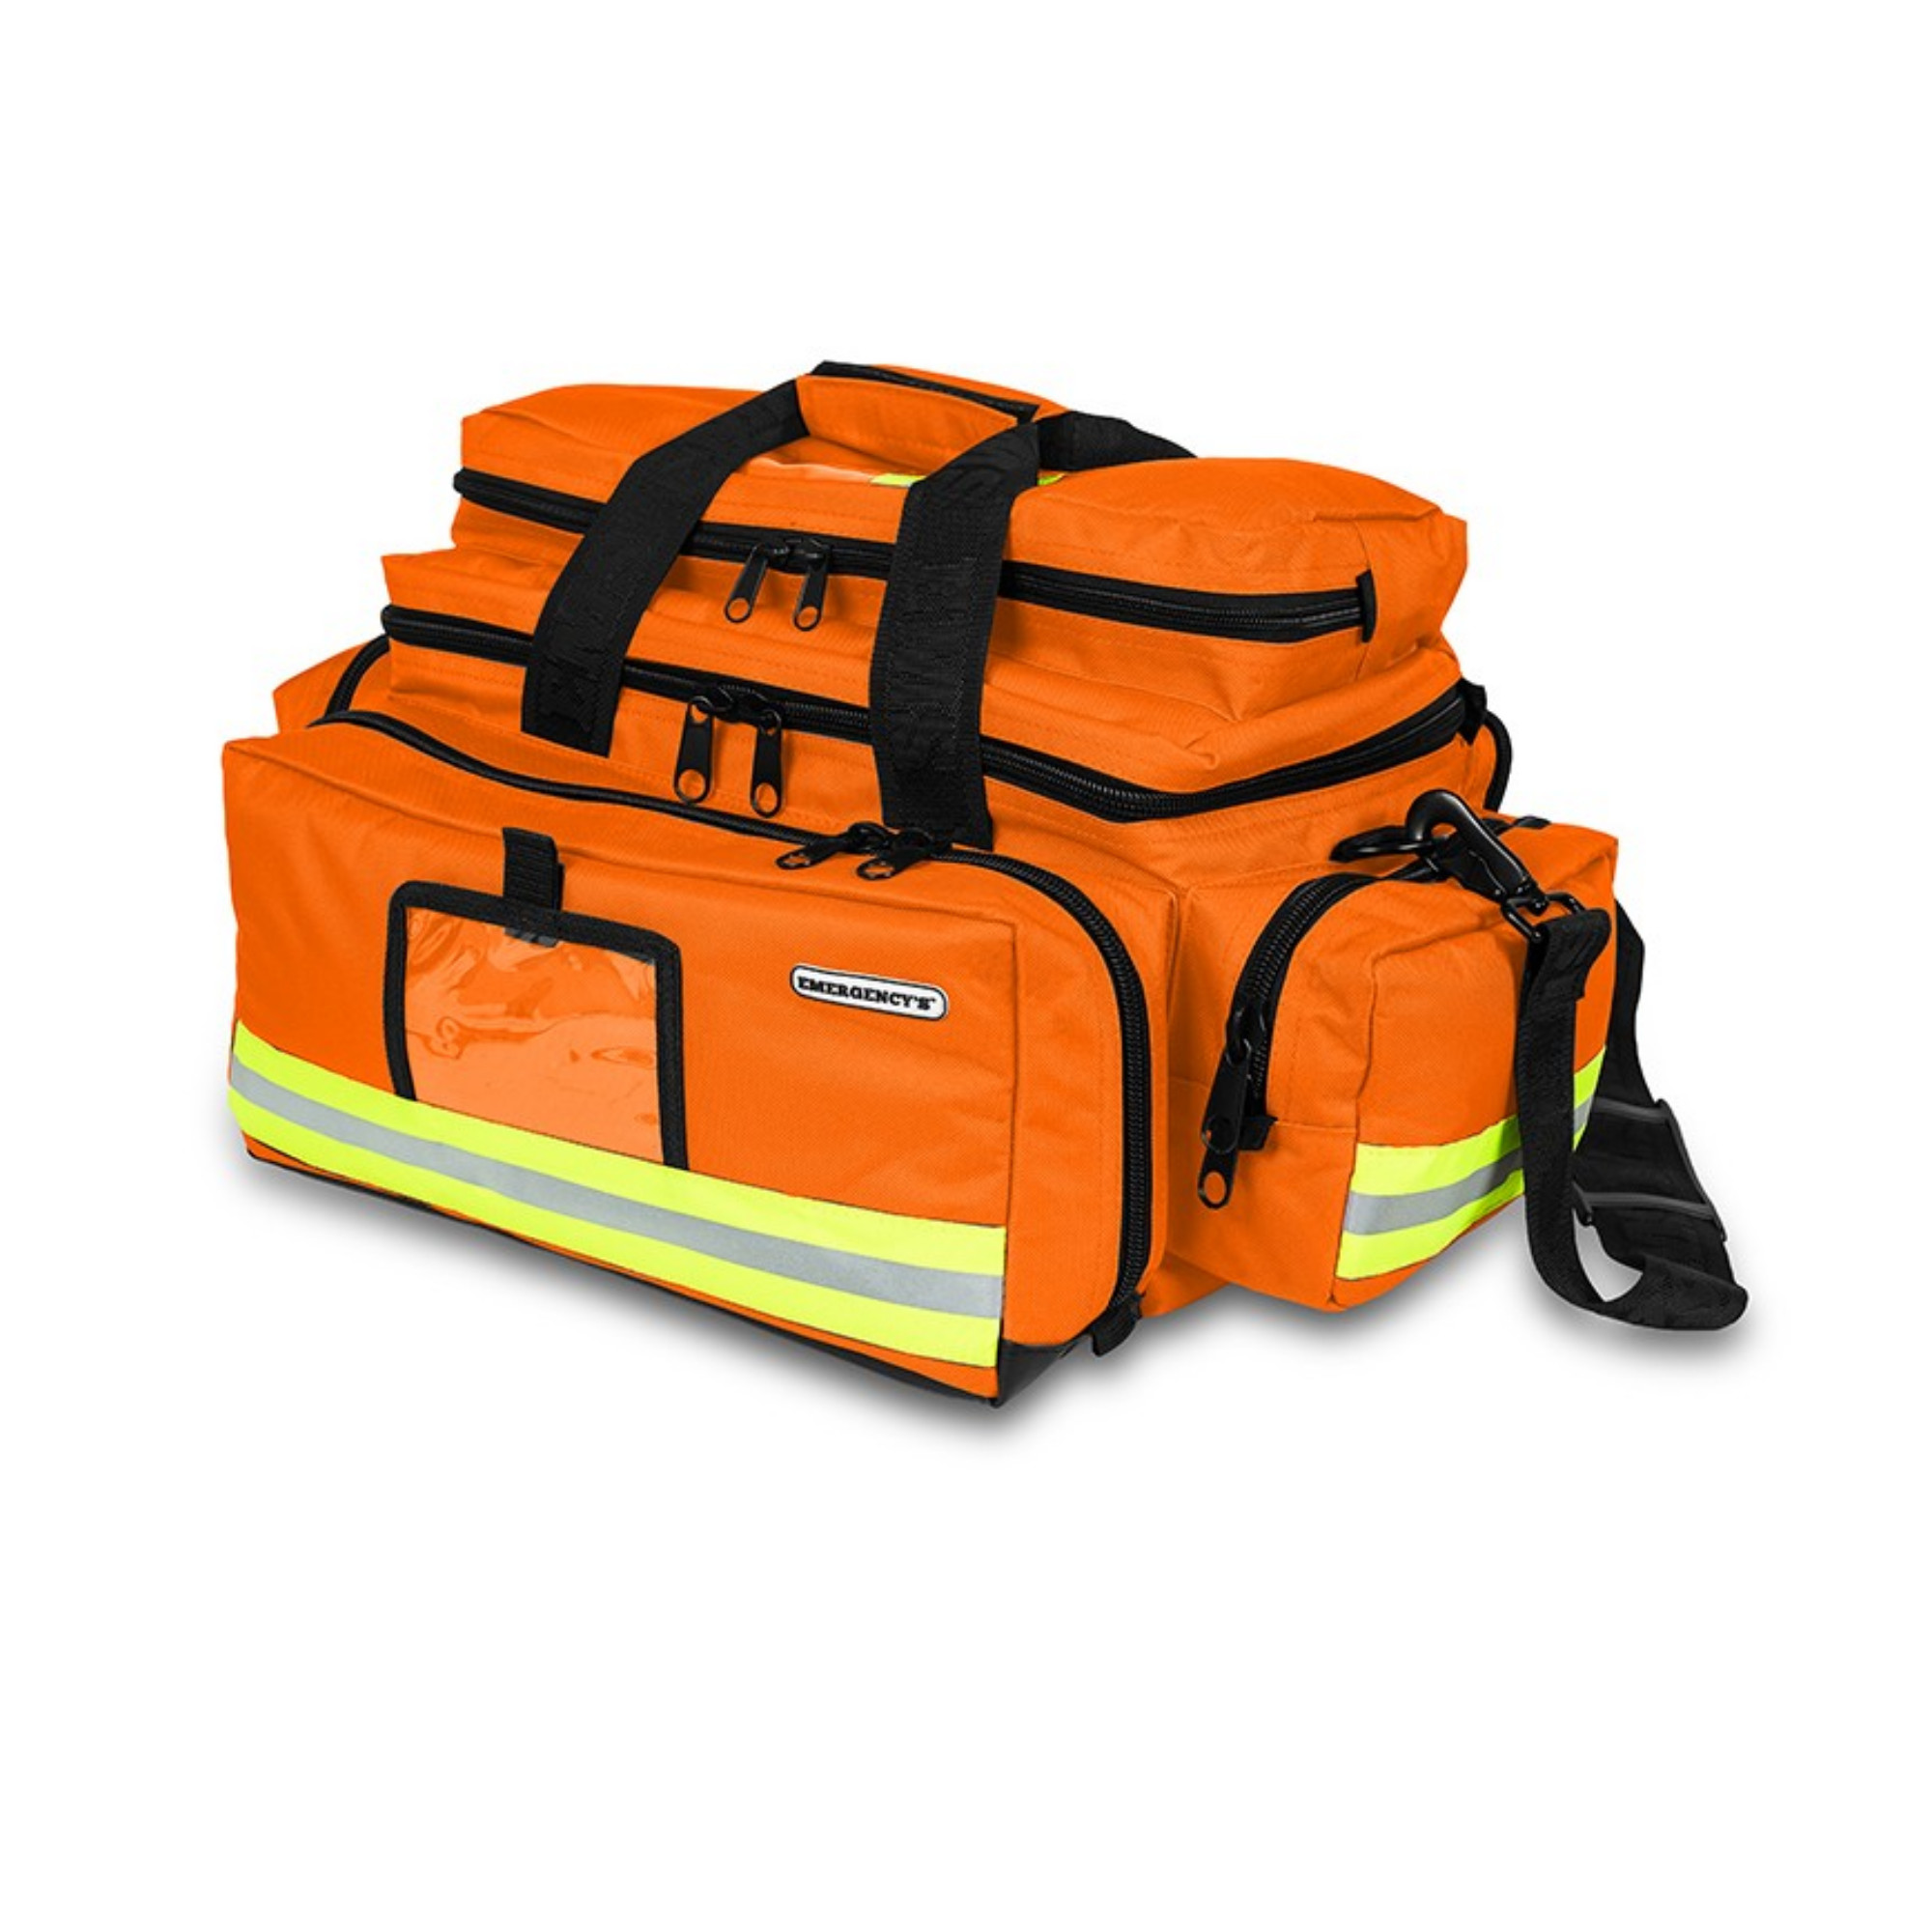 Sac Urgence - Grande capacité - 38 x 55 x 31,5 cm - Orange